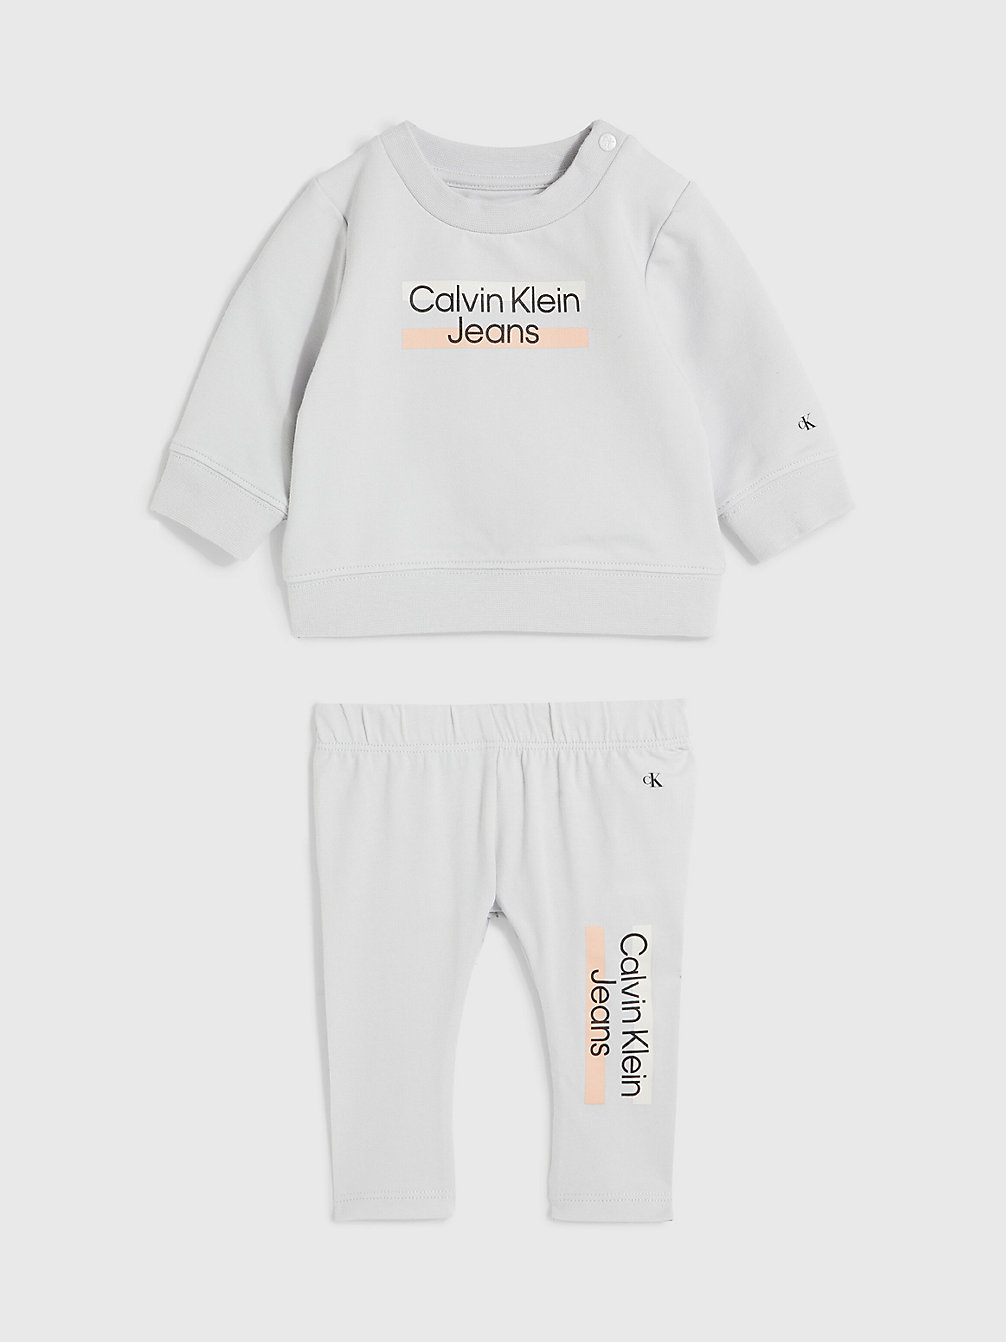 GHOST GREY Survêtement Avec Logo Pour Nouveau-Né undefined newborn Calvin Klein